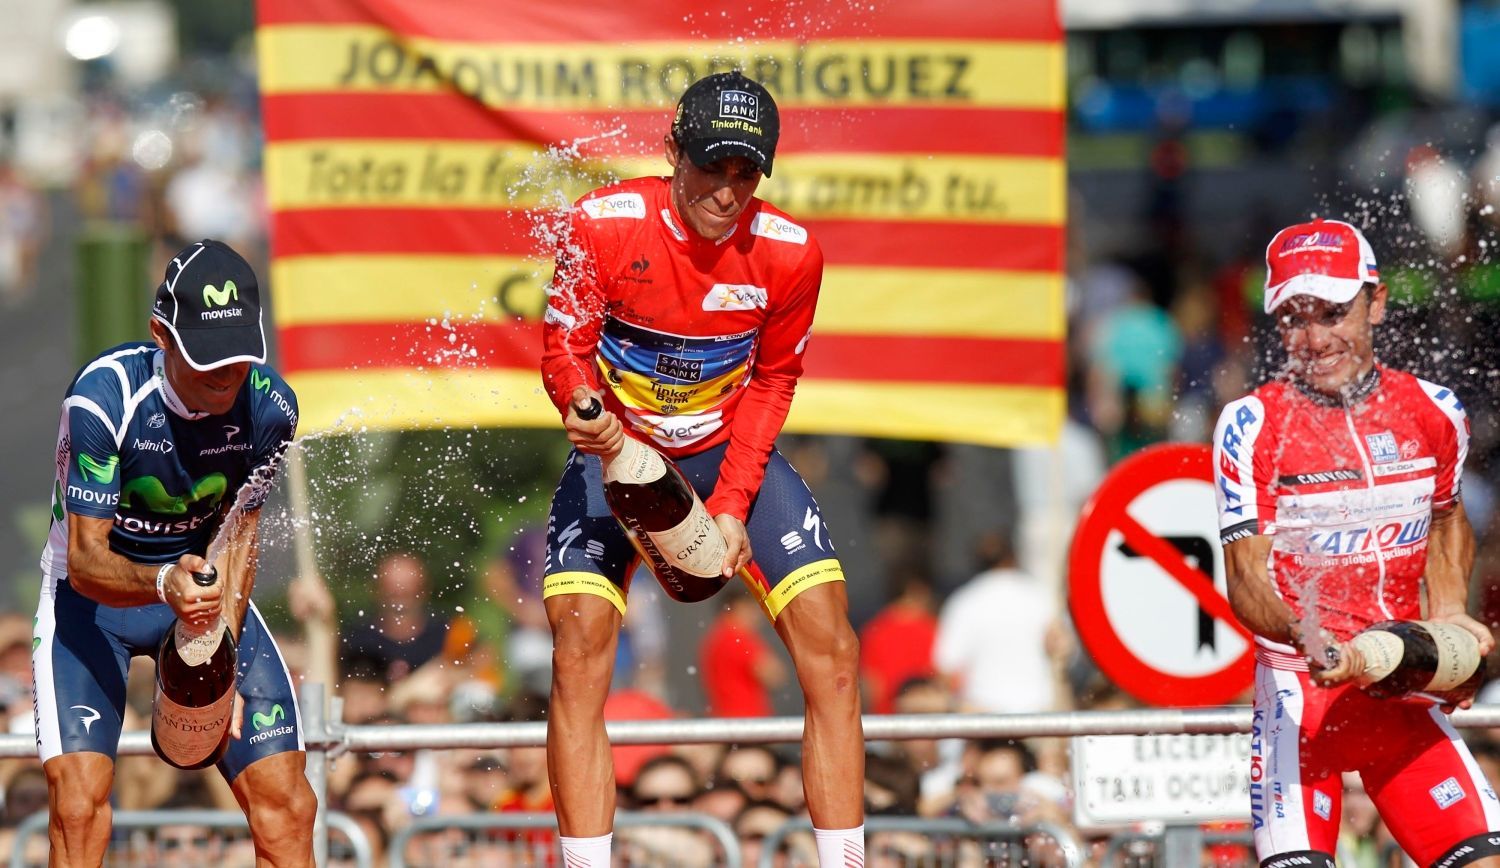 Španělský cyklista Alberto Contador (uprostřed) slaví vítězství ve Vueltě 2012 po poslední etapě 2012. Vlevo je druhý Alejandro Valverde a vpravo třetí Joaquim Purito Rodriguez.